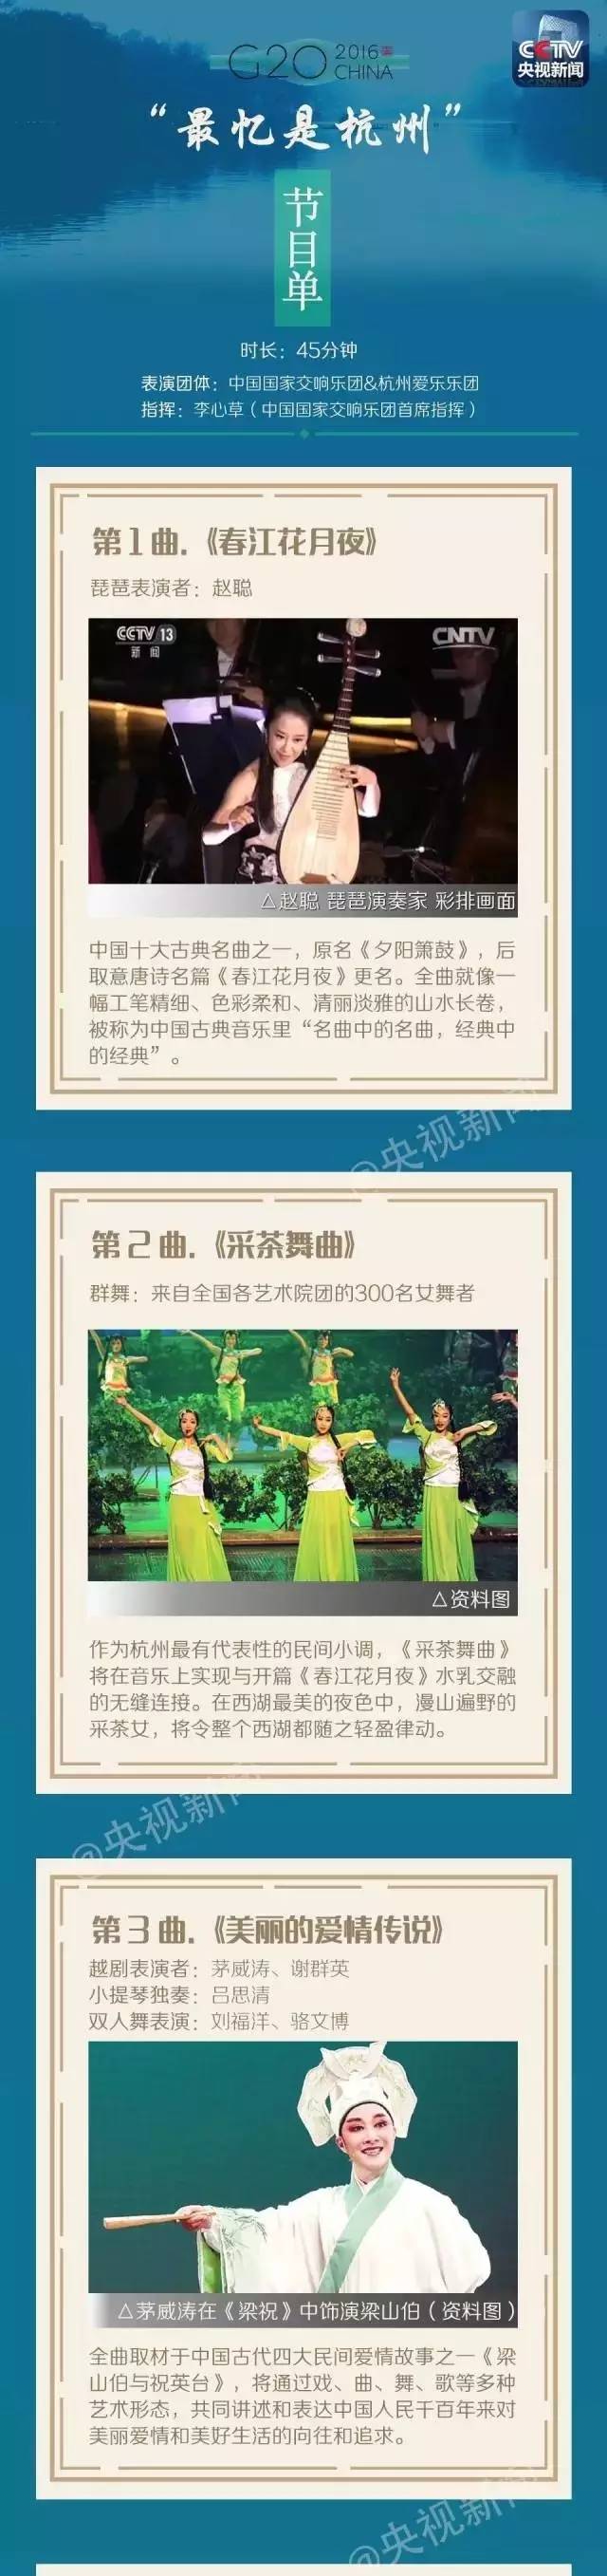 G20峰会文艺演出将在杭州西湖震撼上演 节目单抢先看